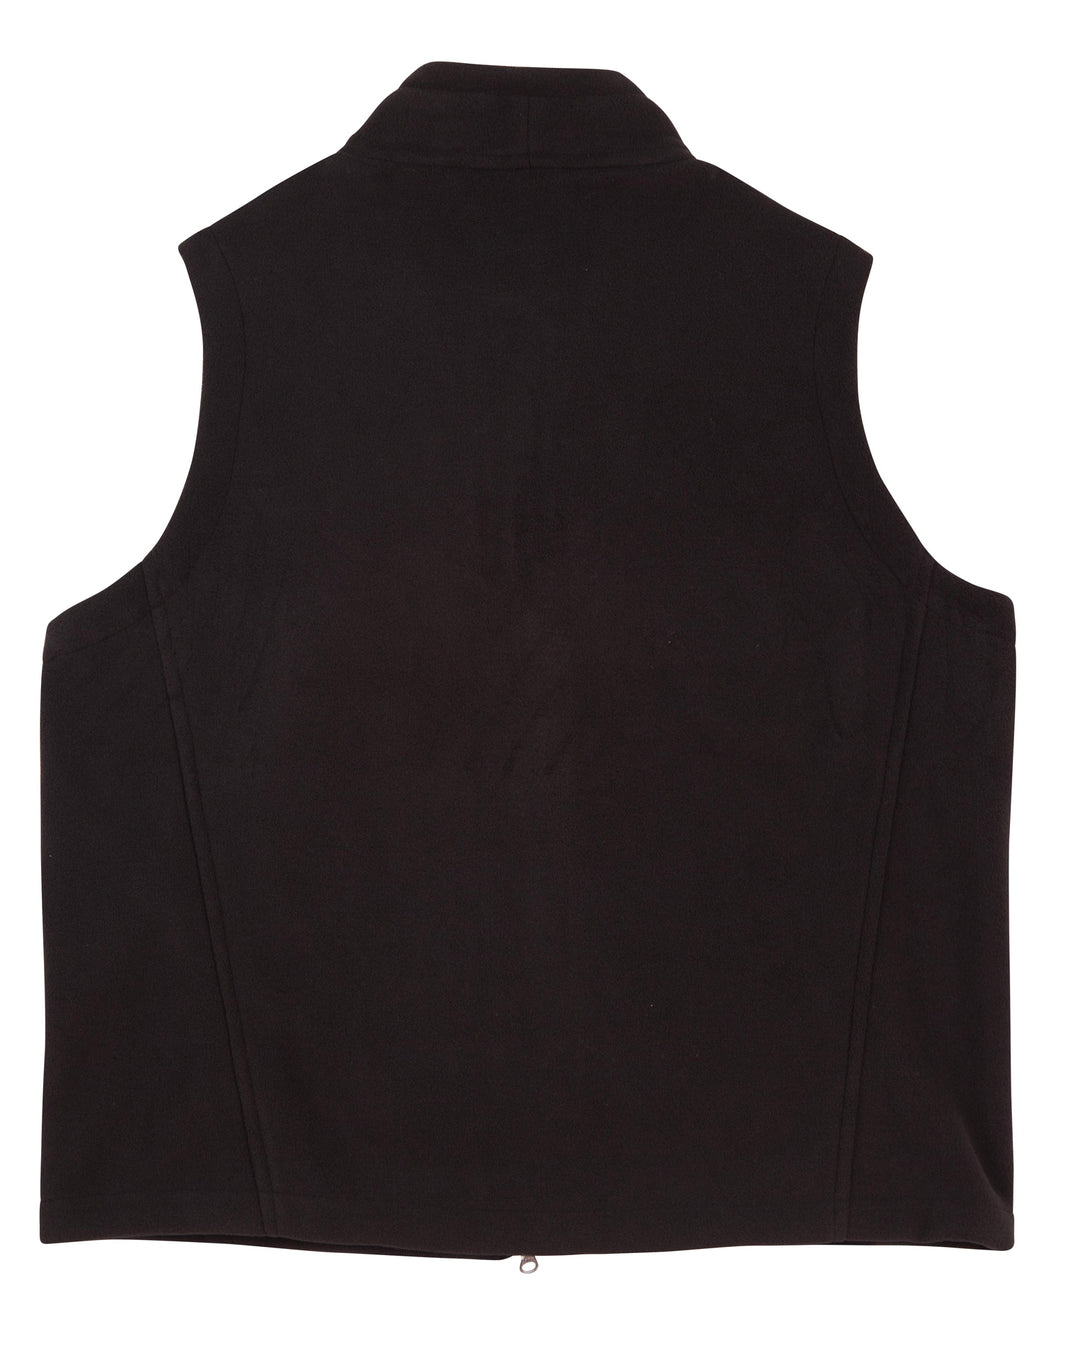 PF09 Diamond Fleece Vest Men's